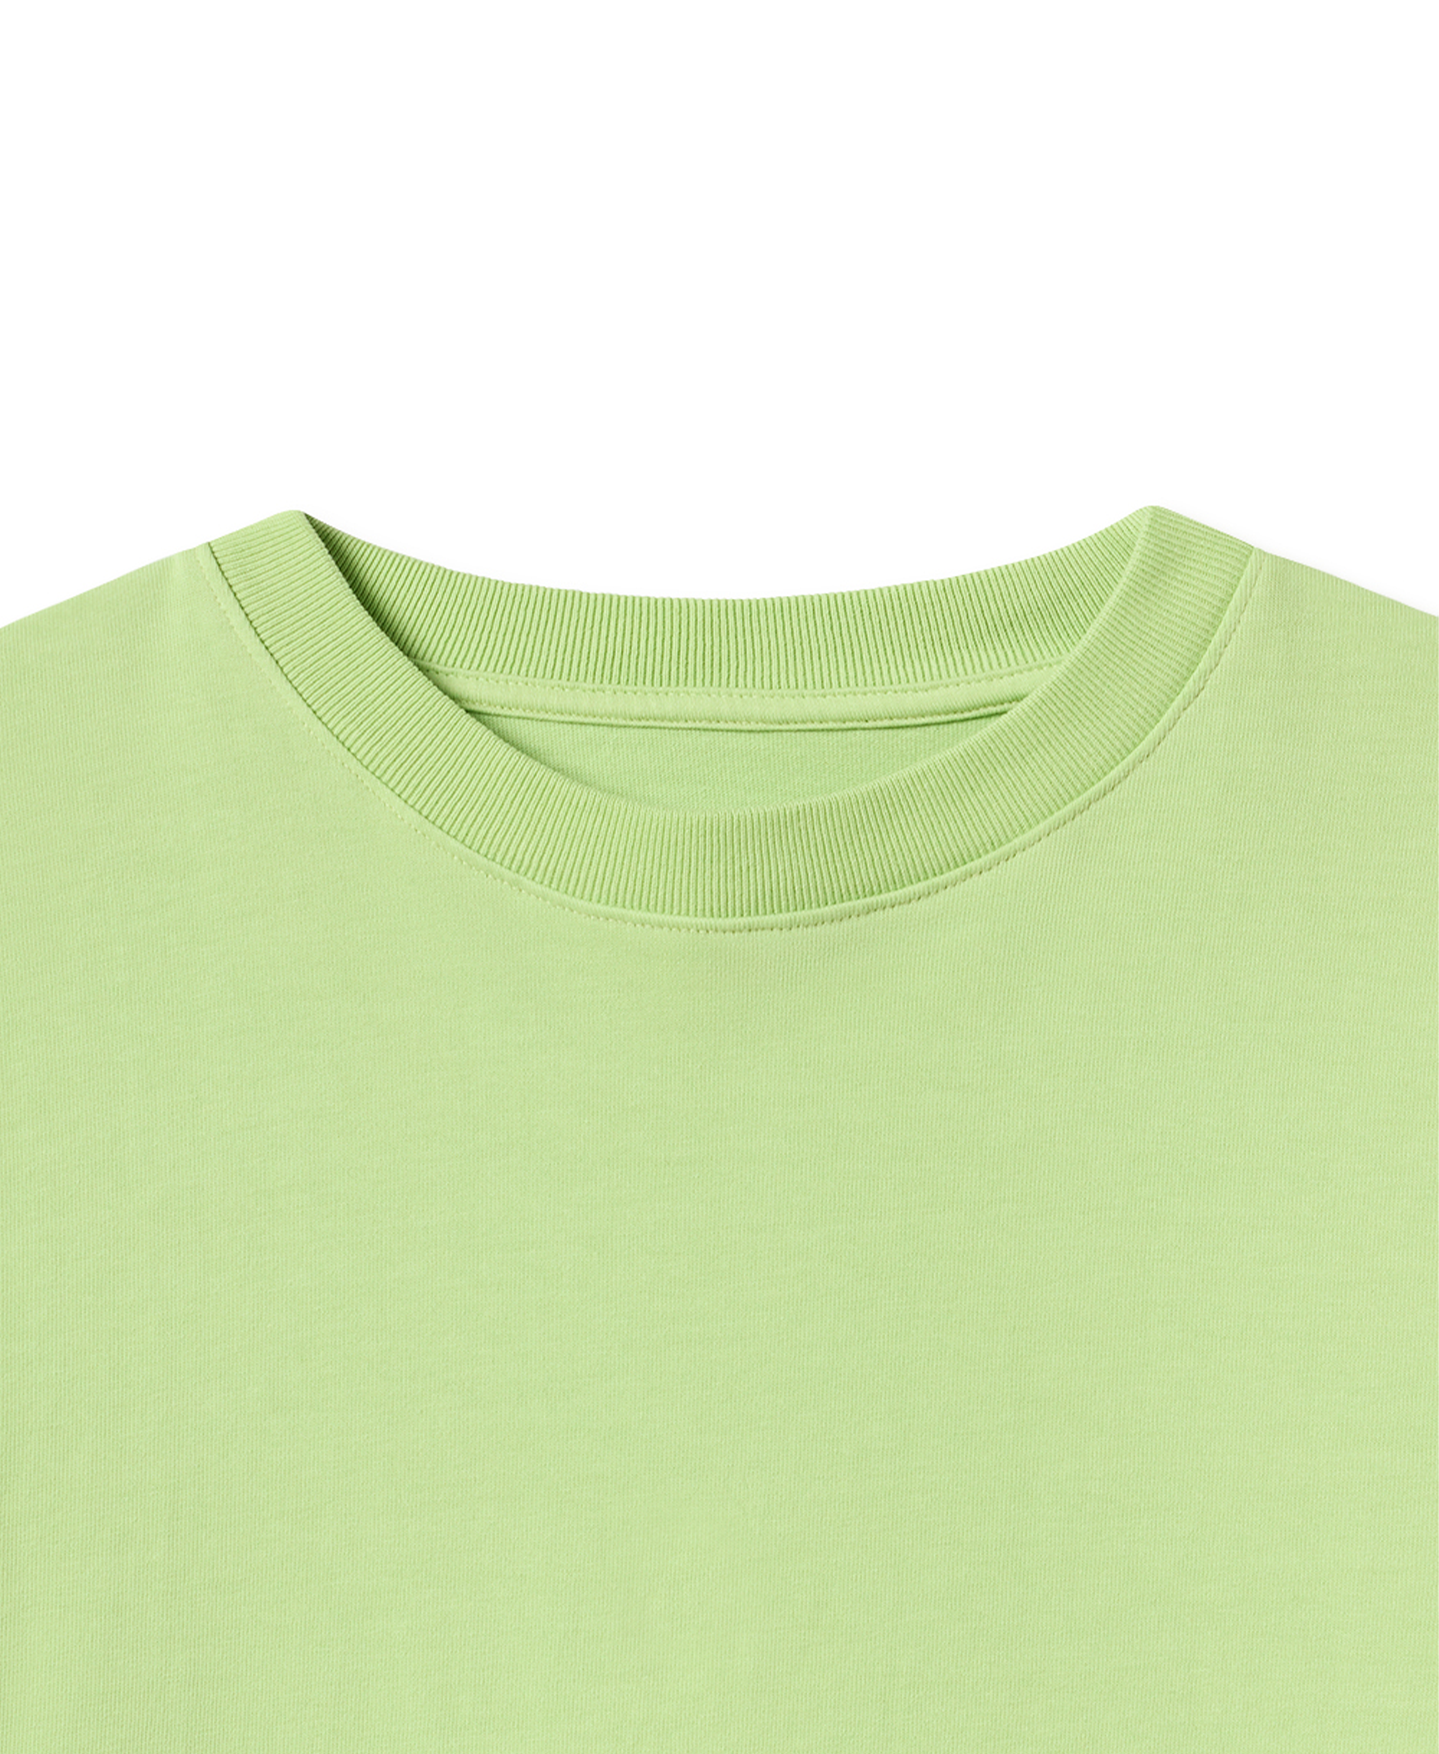 300 GSM 'Moss Green' T-Shirt